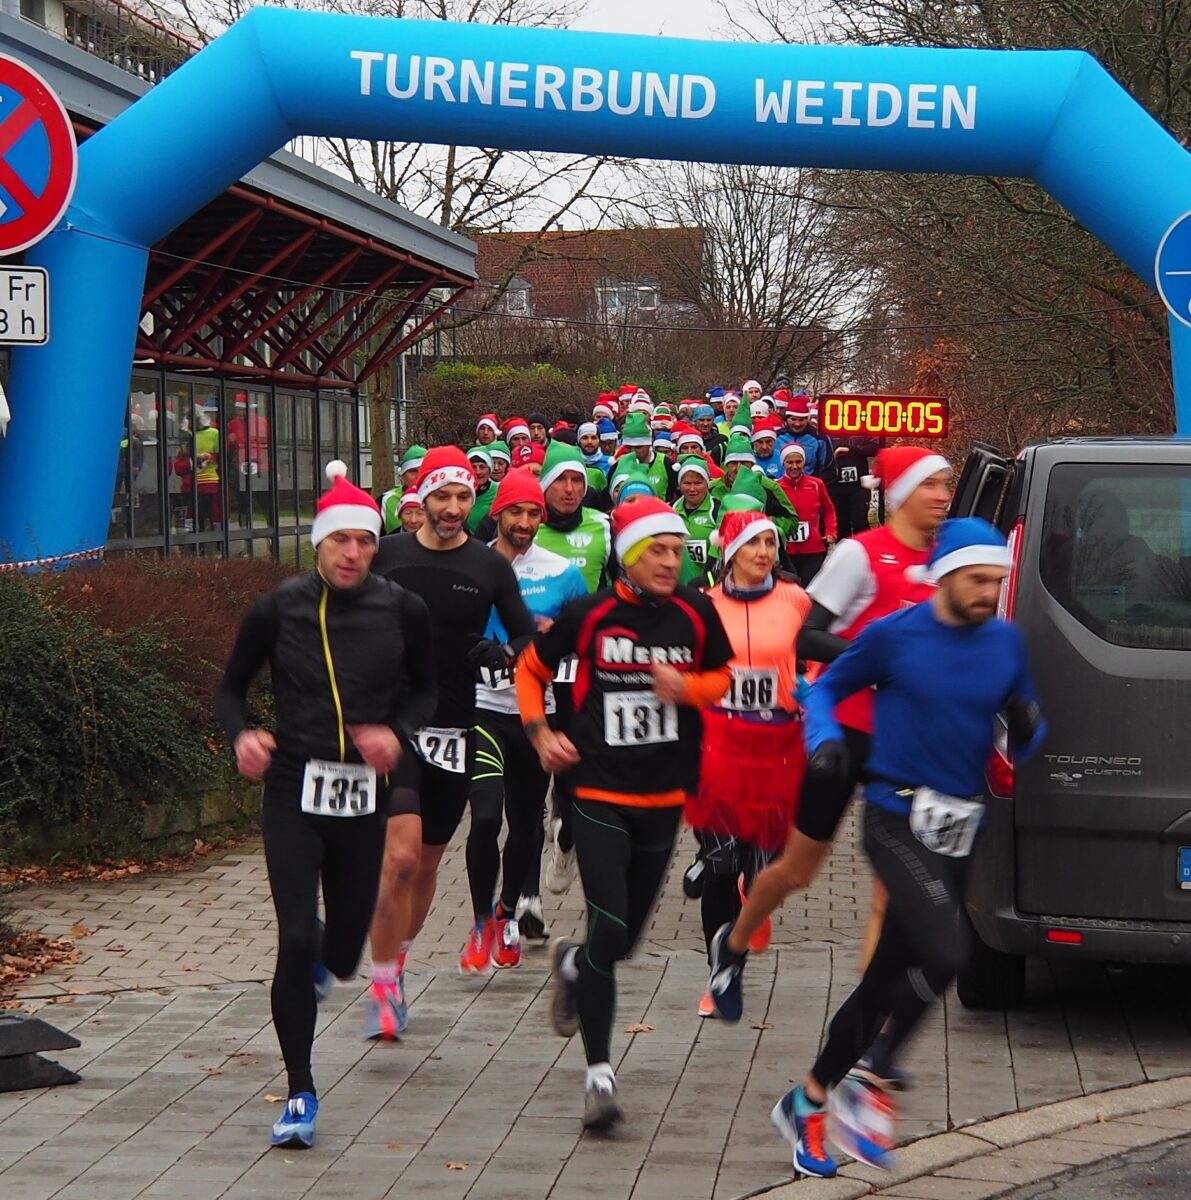 Der Turnerbund Weiden lädt alle
Laufsportbegeisterten zum Fun Run Nikolaus ein. Foto: Turnerbund Weiden